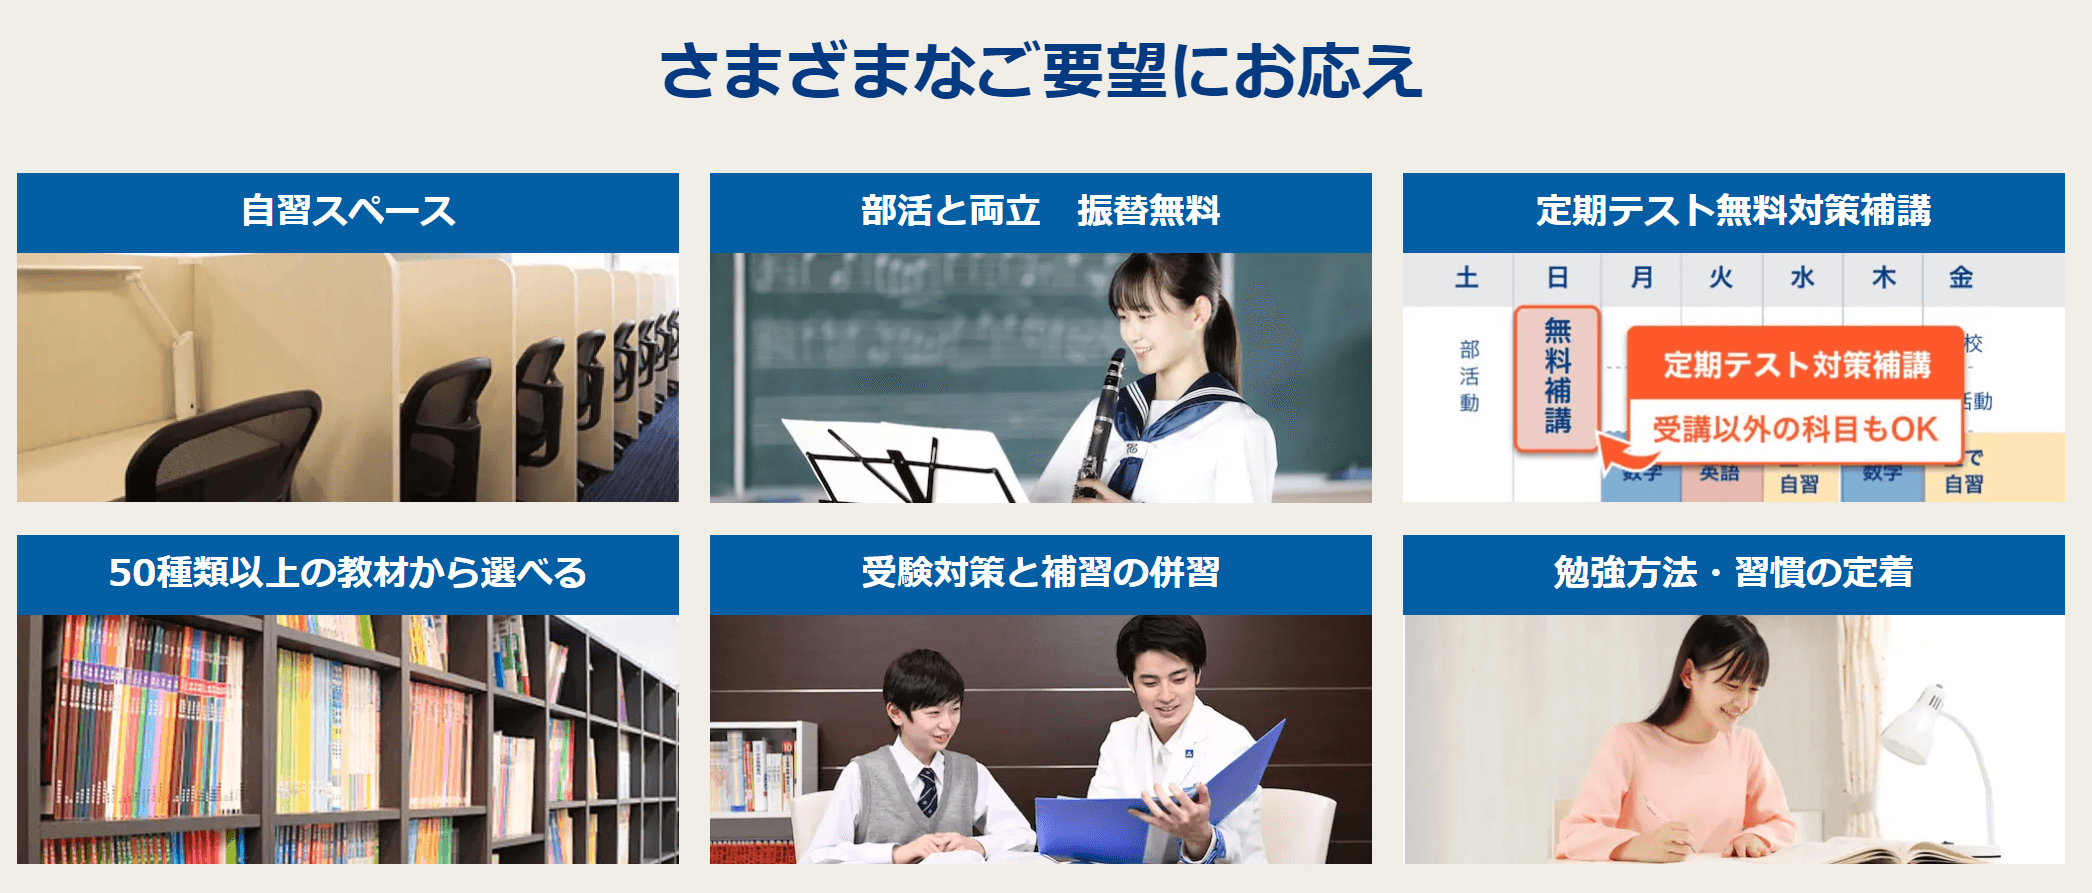 東京個別指導学院の6つの特徴